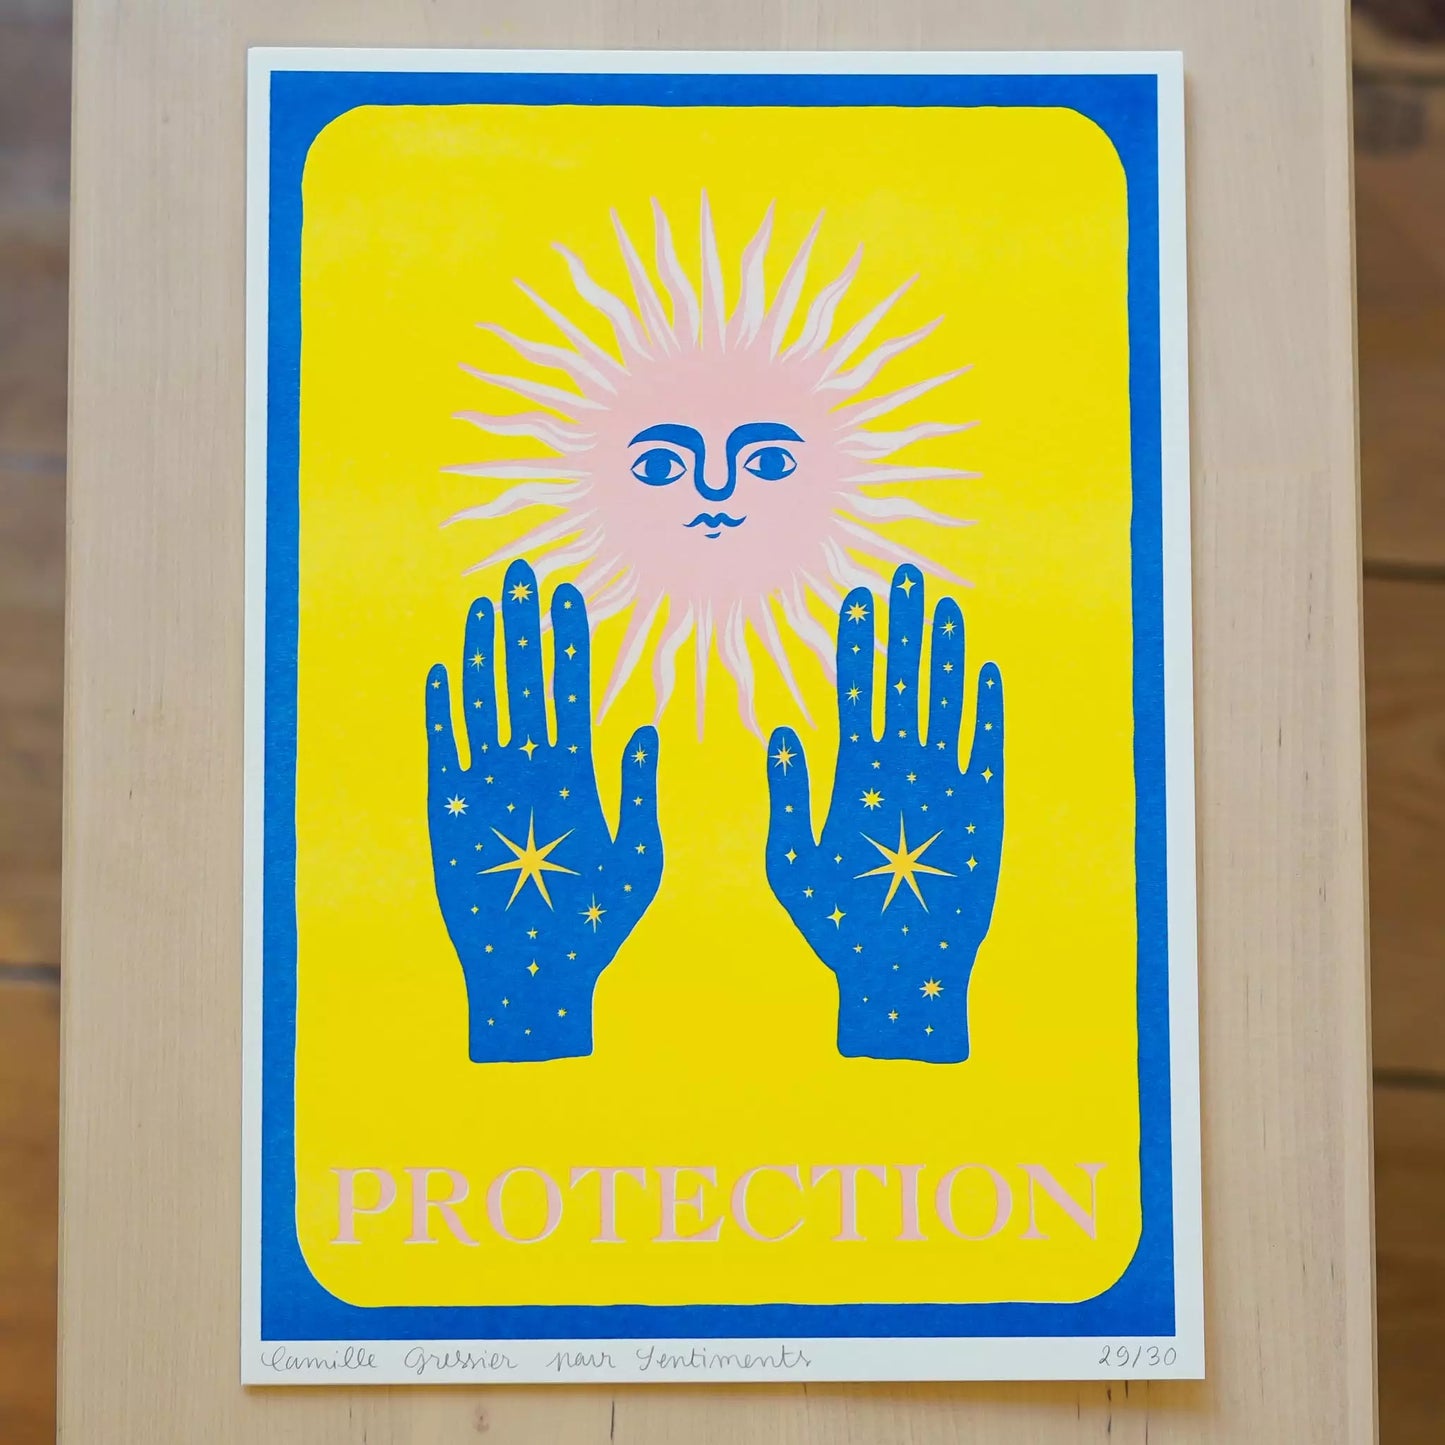 Illustration Protection de Camille Gressier d'un soleil stylisé avec un visage portant ses mains remplies d'un ciel bleu nuit avec des étoiles en avant sur fond jaune avec la mention PROTECTION en bas de l'affiche